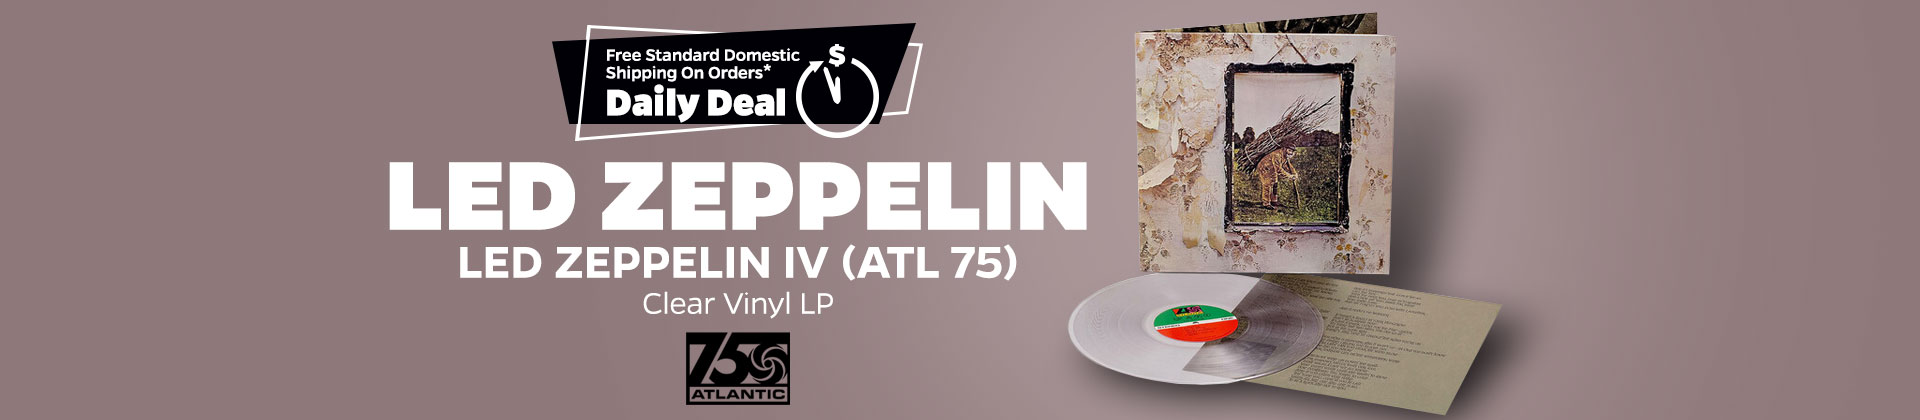 Led Zeppelin IV 